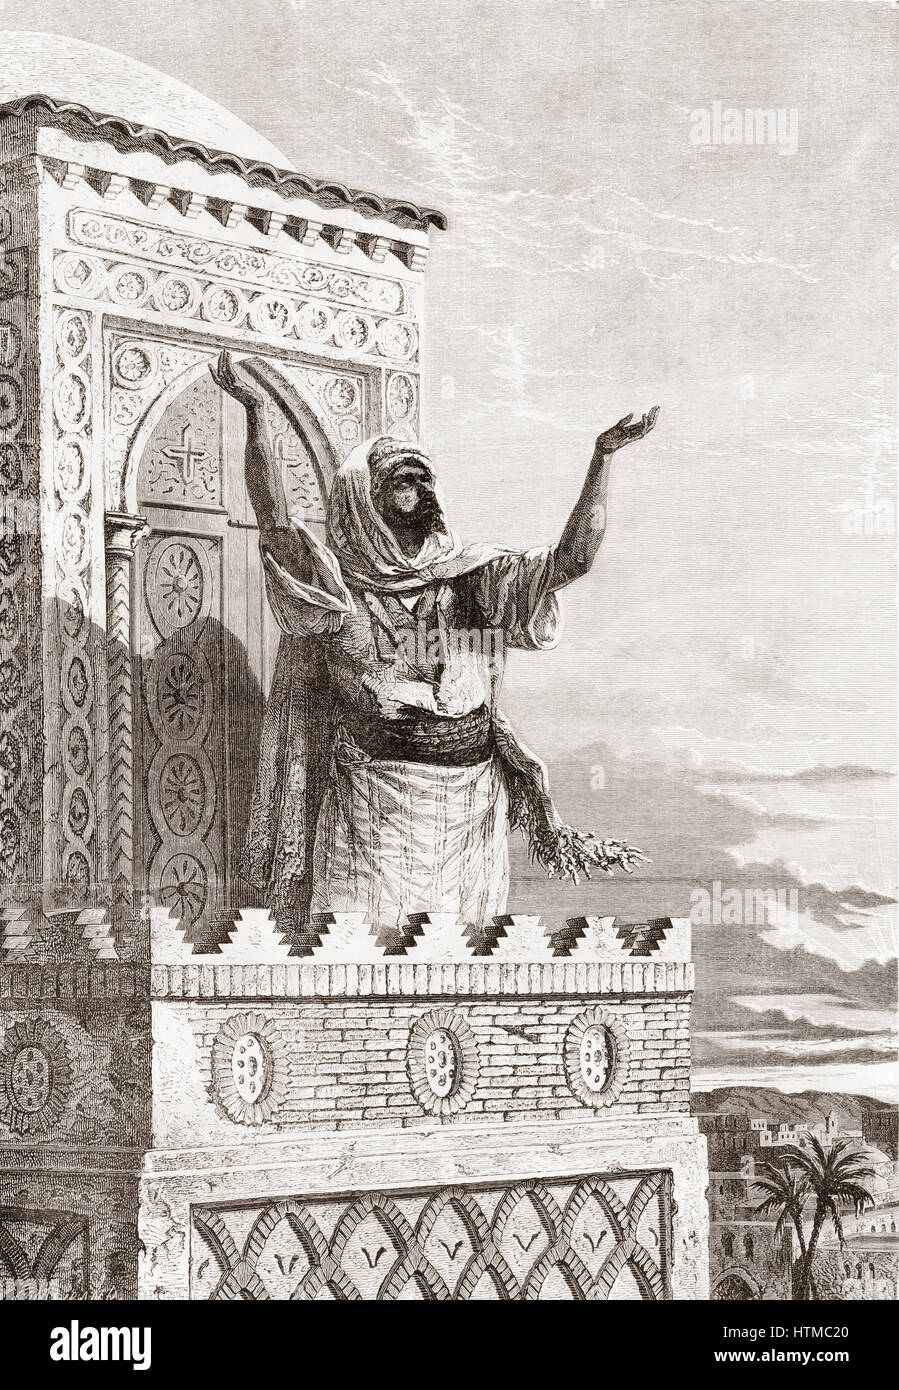 Le muezzin, appelant les fidèles à la prière dans la Grande Mosquée, Tétouan, Maroc, 19e siècle. D Album-Evenement, premier du journal L'Evenement, publié 1865. Banque D'Images